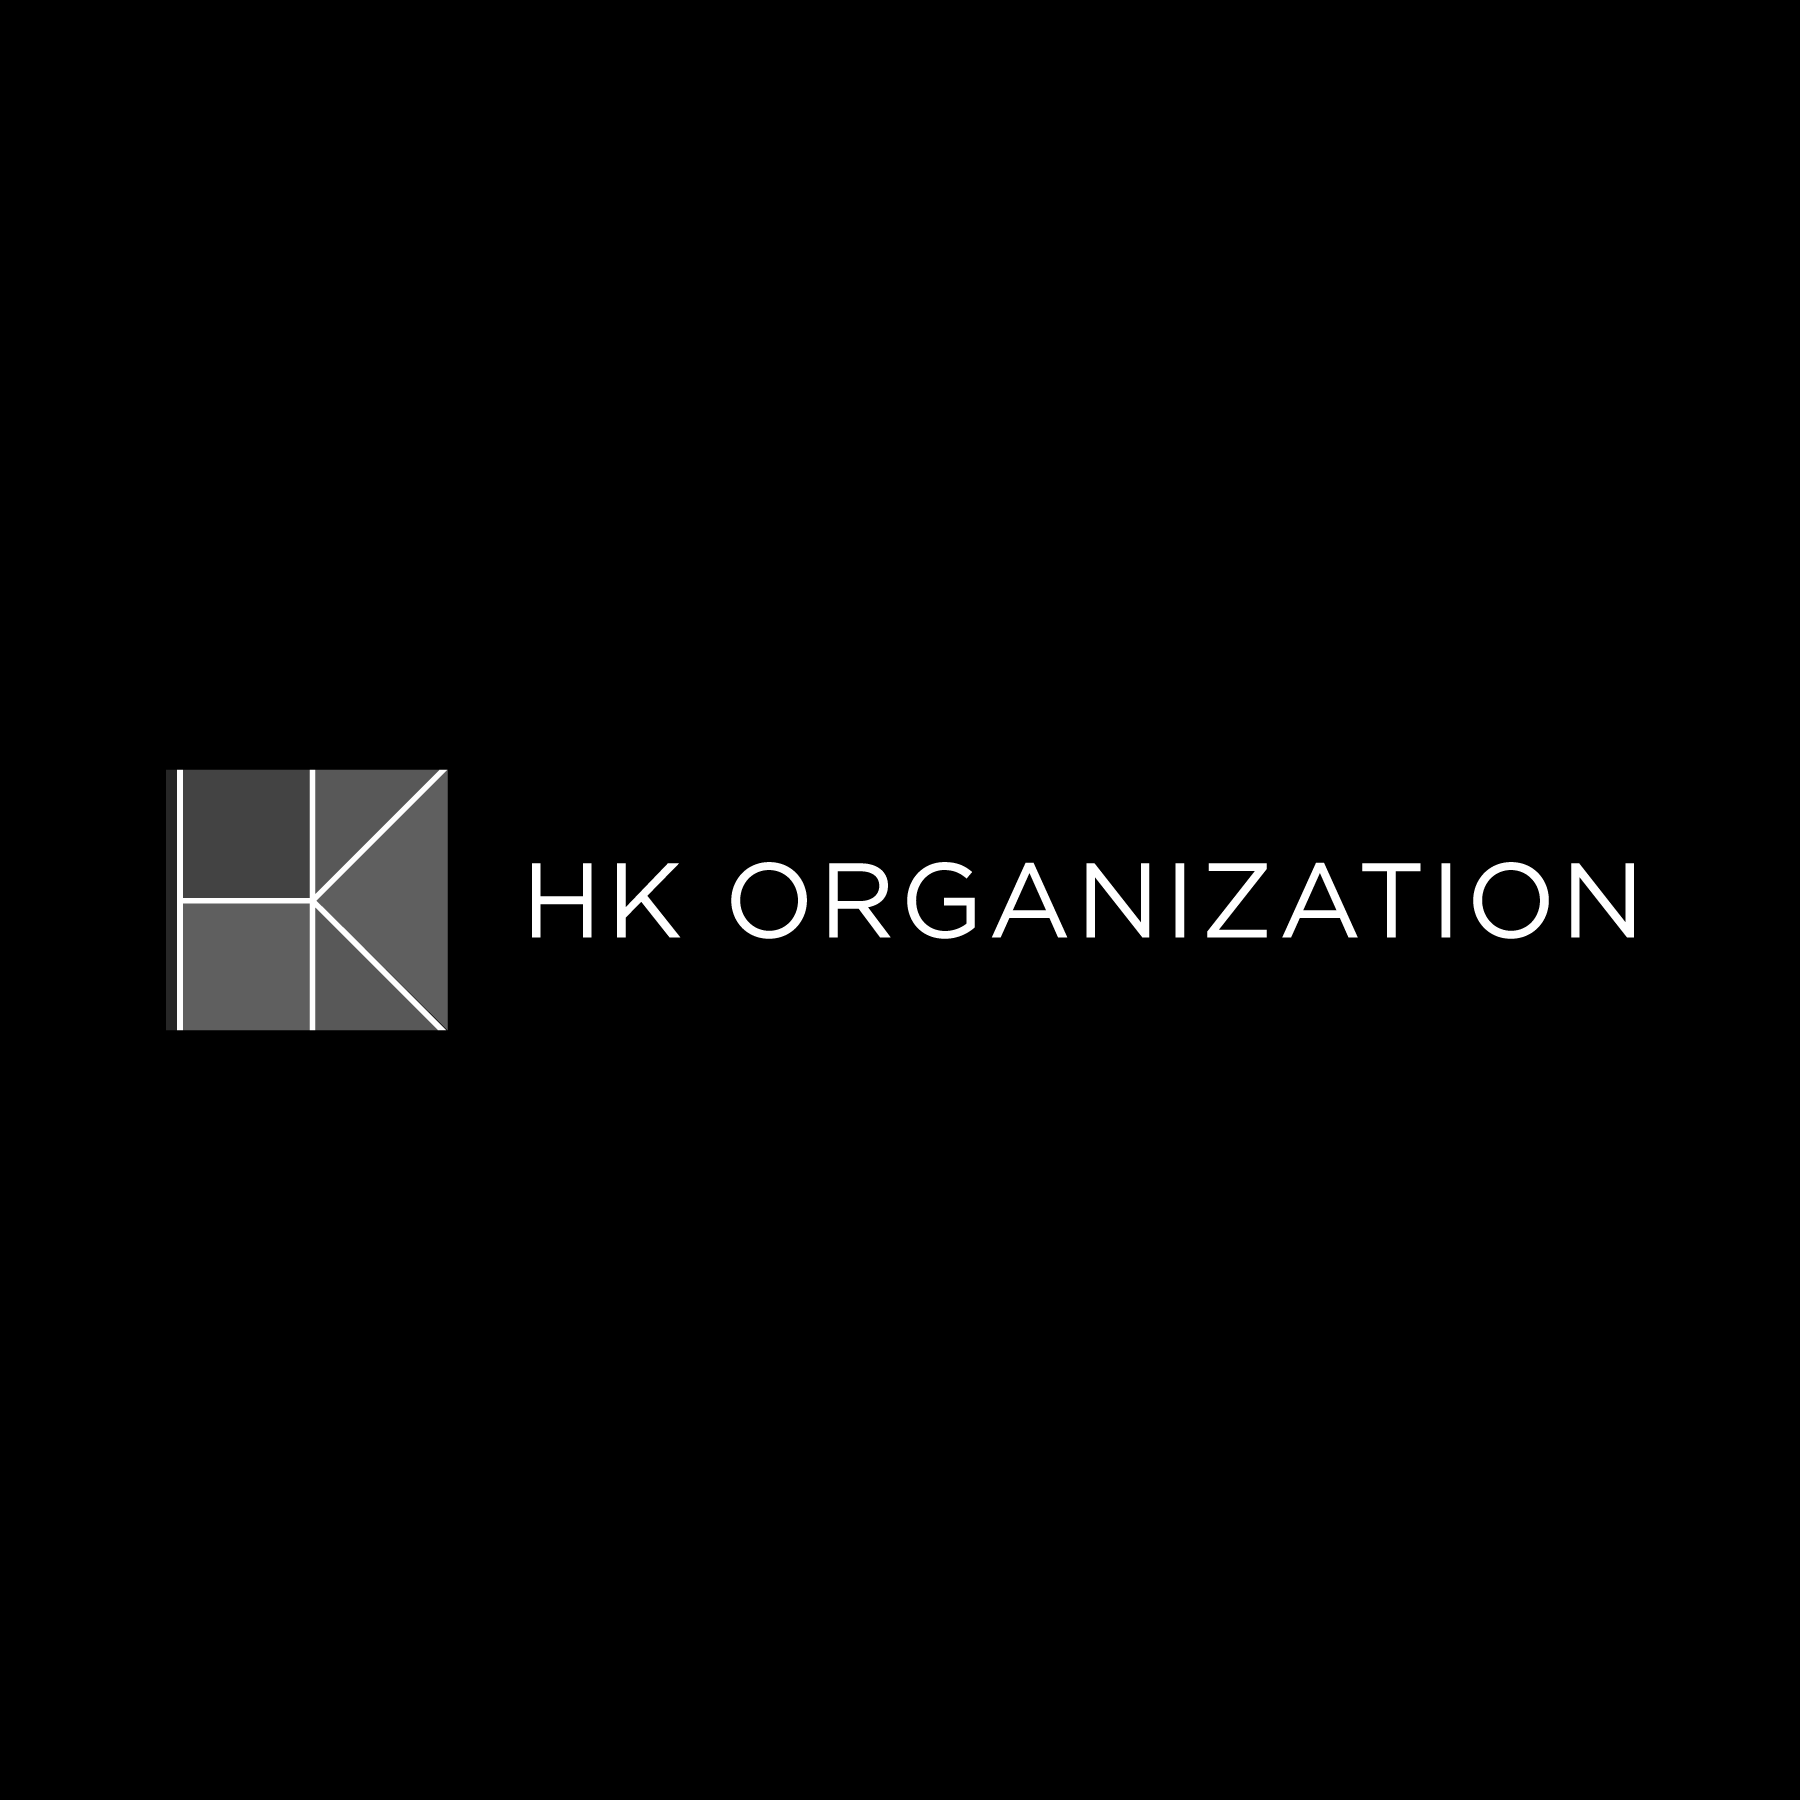 HK Organization B&W.png